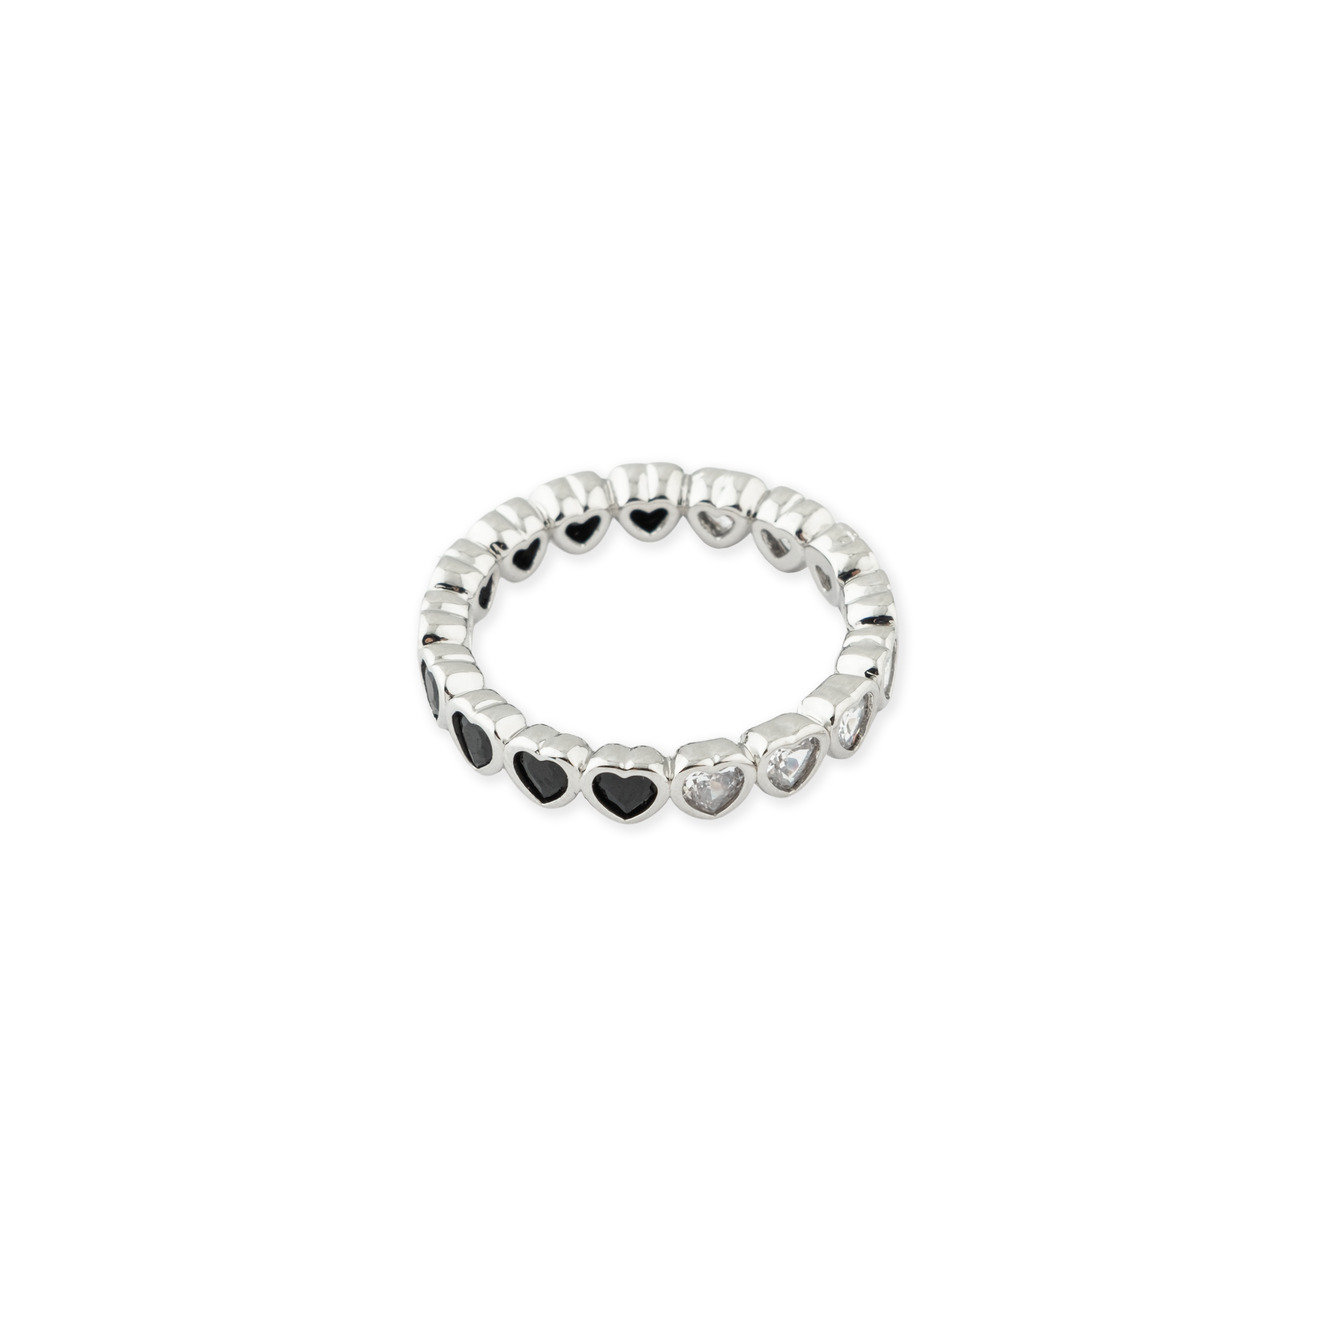 Herald Percy Серебристое кольцо из сердец с белыми и черными кристаллами herald percy сет из трех каффов с луной и кристаллами